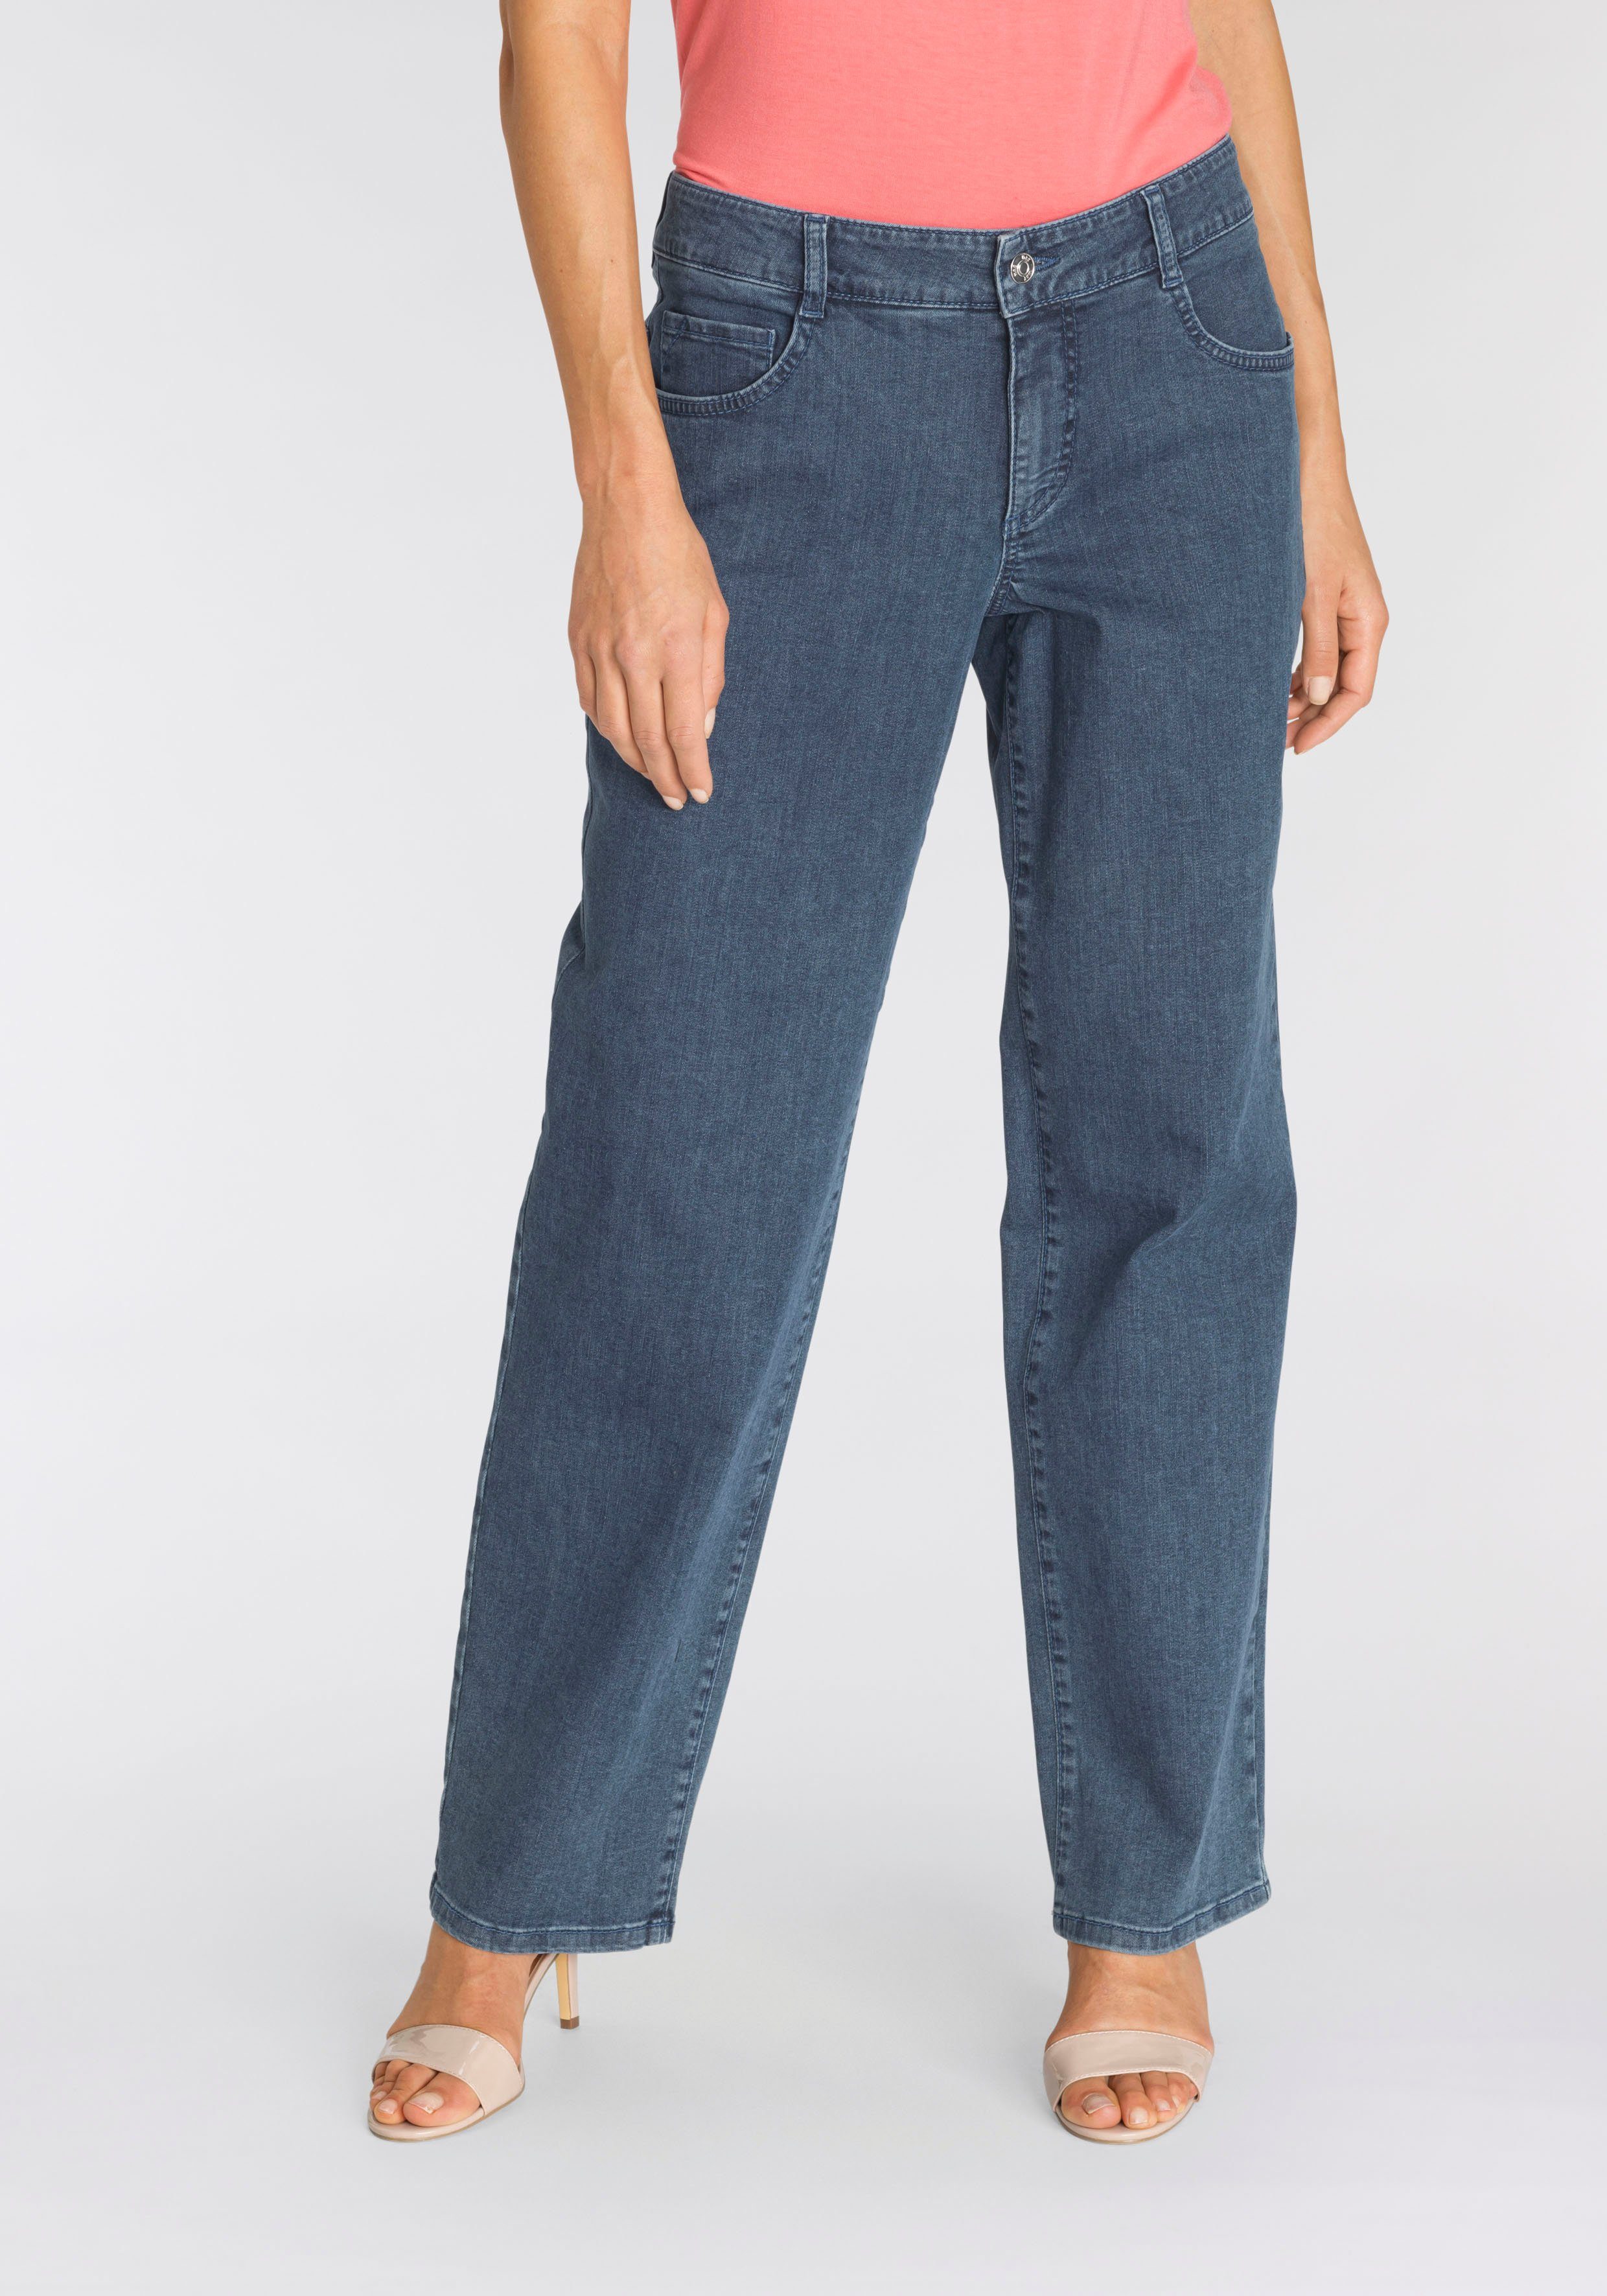 Damen Bekleidung Jeans Jeans mit gerader Passform Missguided Denim jeans in Blau 